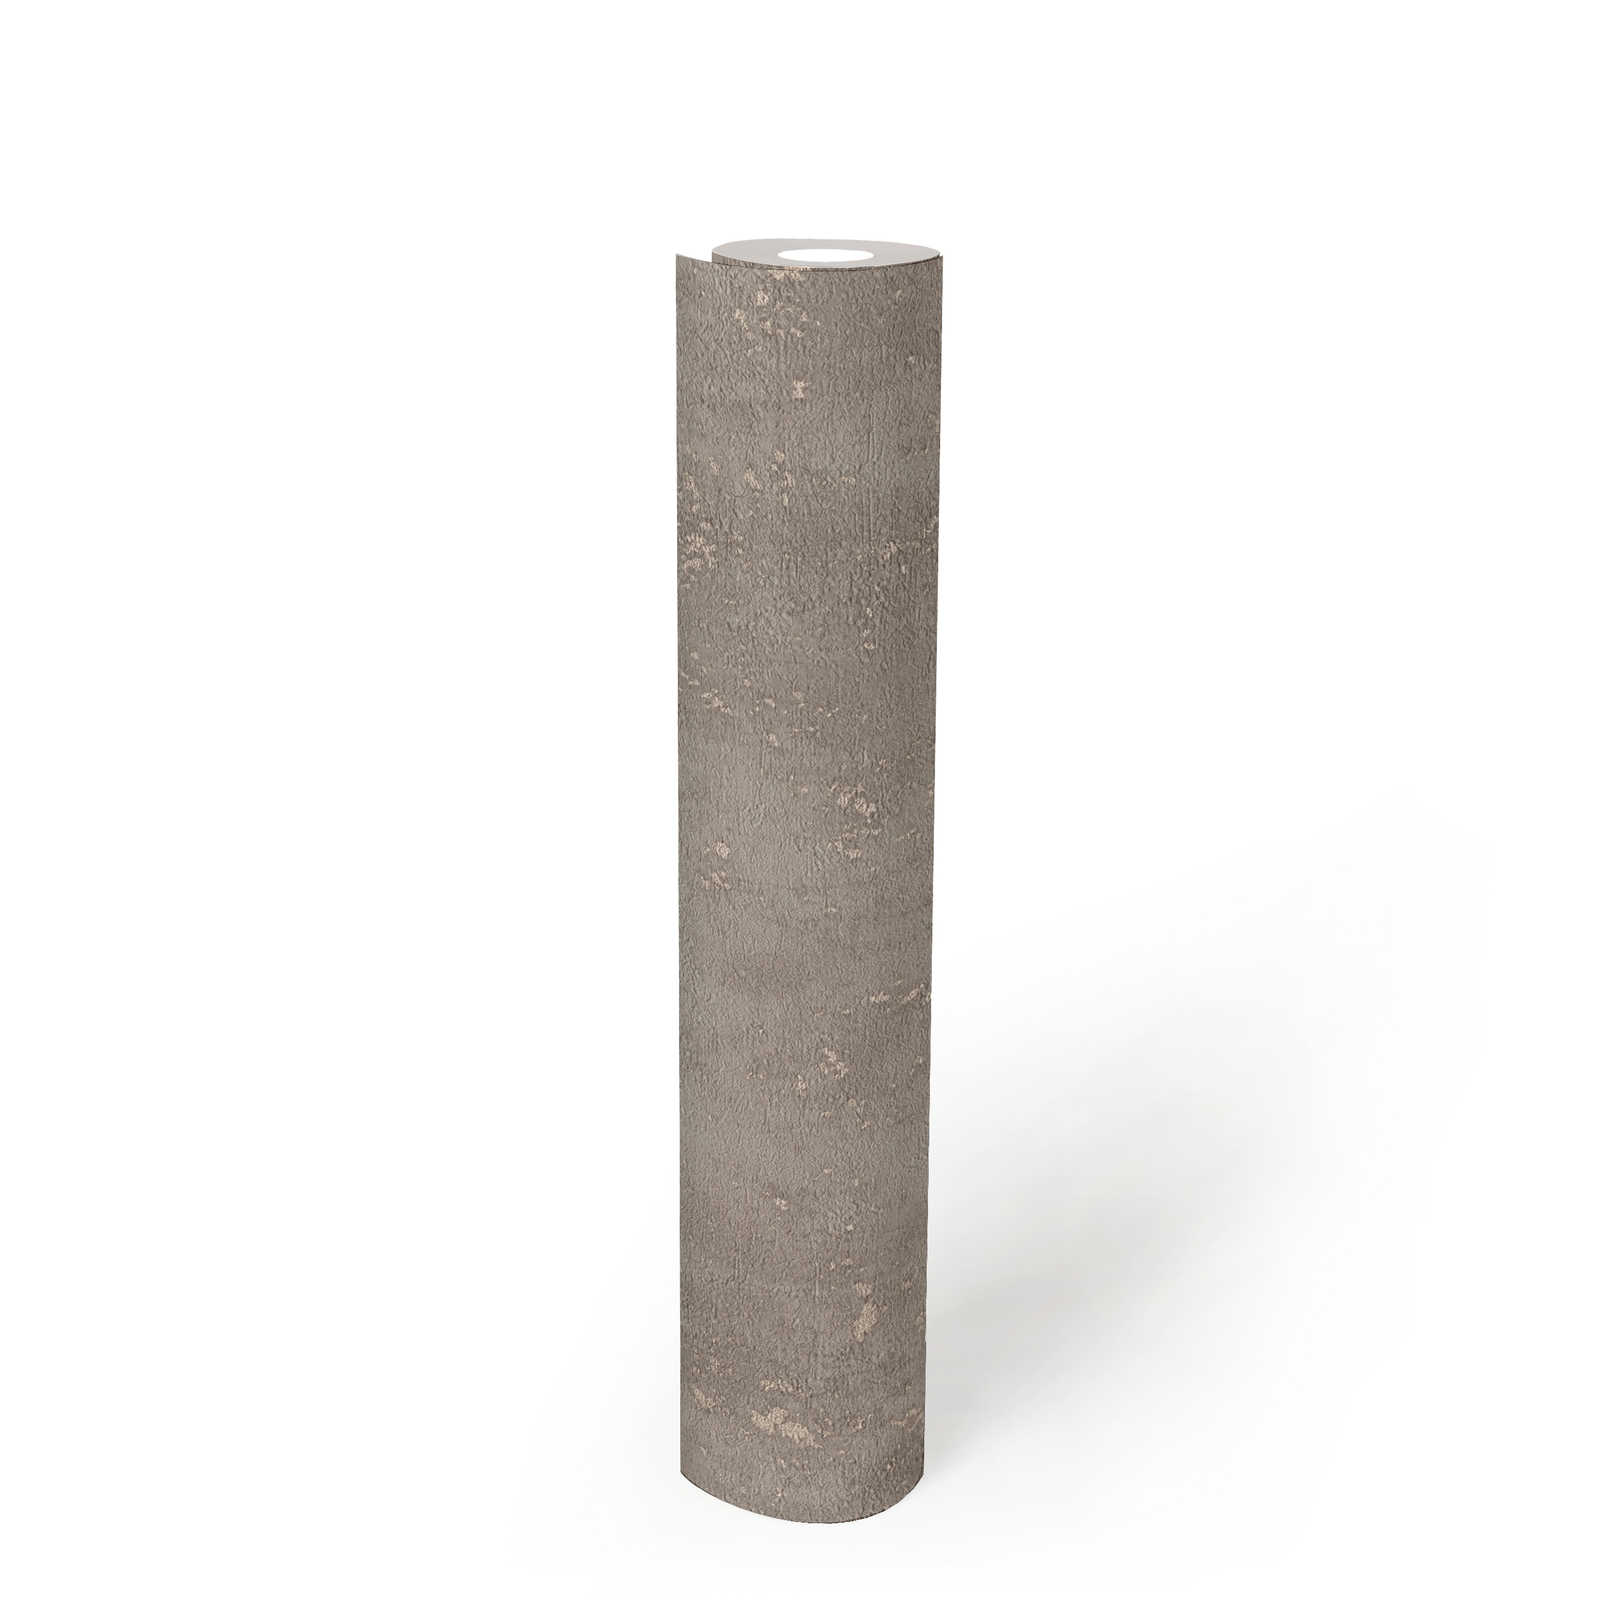             papel pintado marrón claro aspecto de yeso con acento metálico - marrón
        